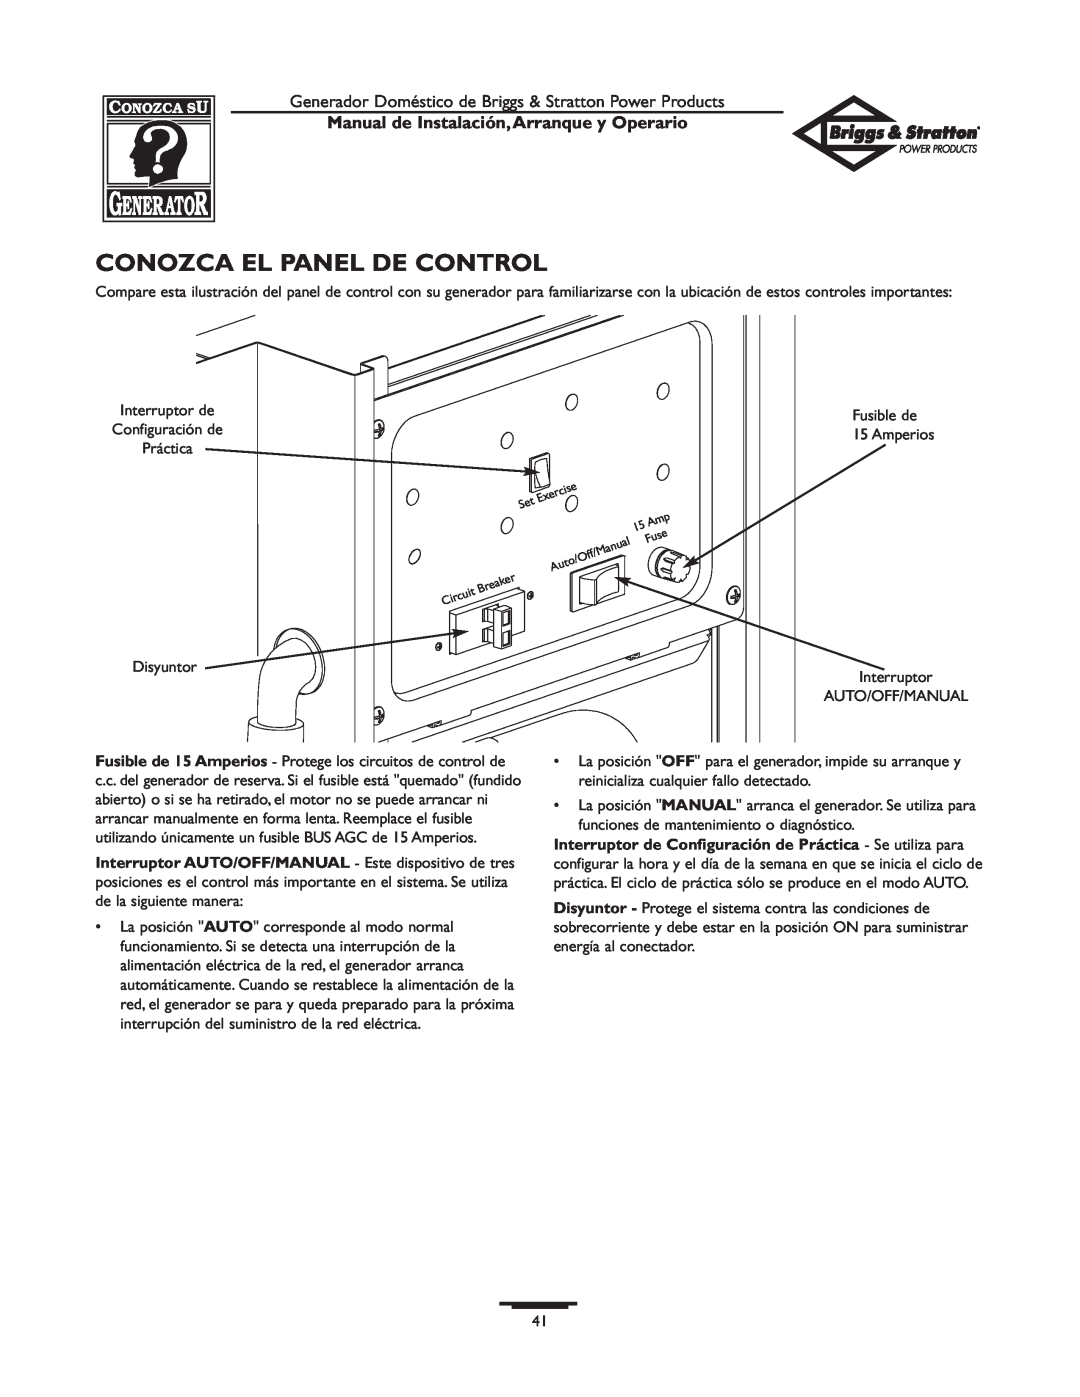 Briggs & Stratton 01897-0 manual Conozca El Panel De Control, Manual de Instalación,Arranque y Operario 